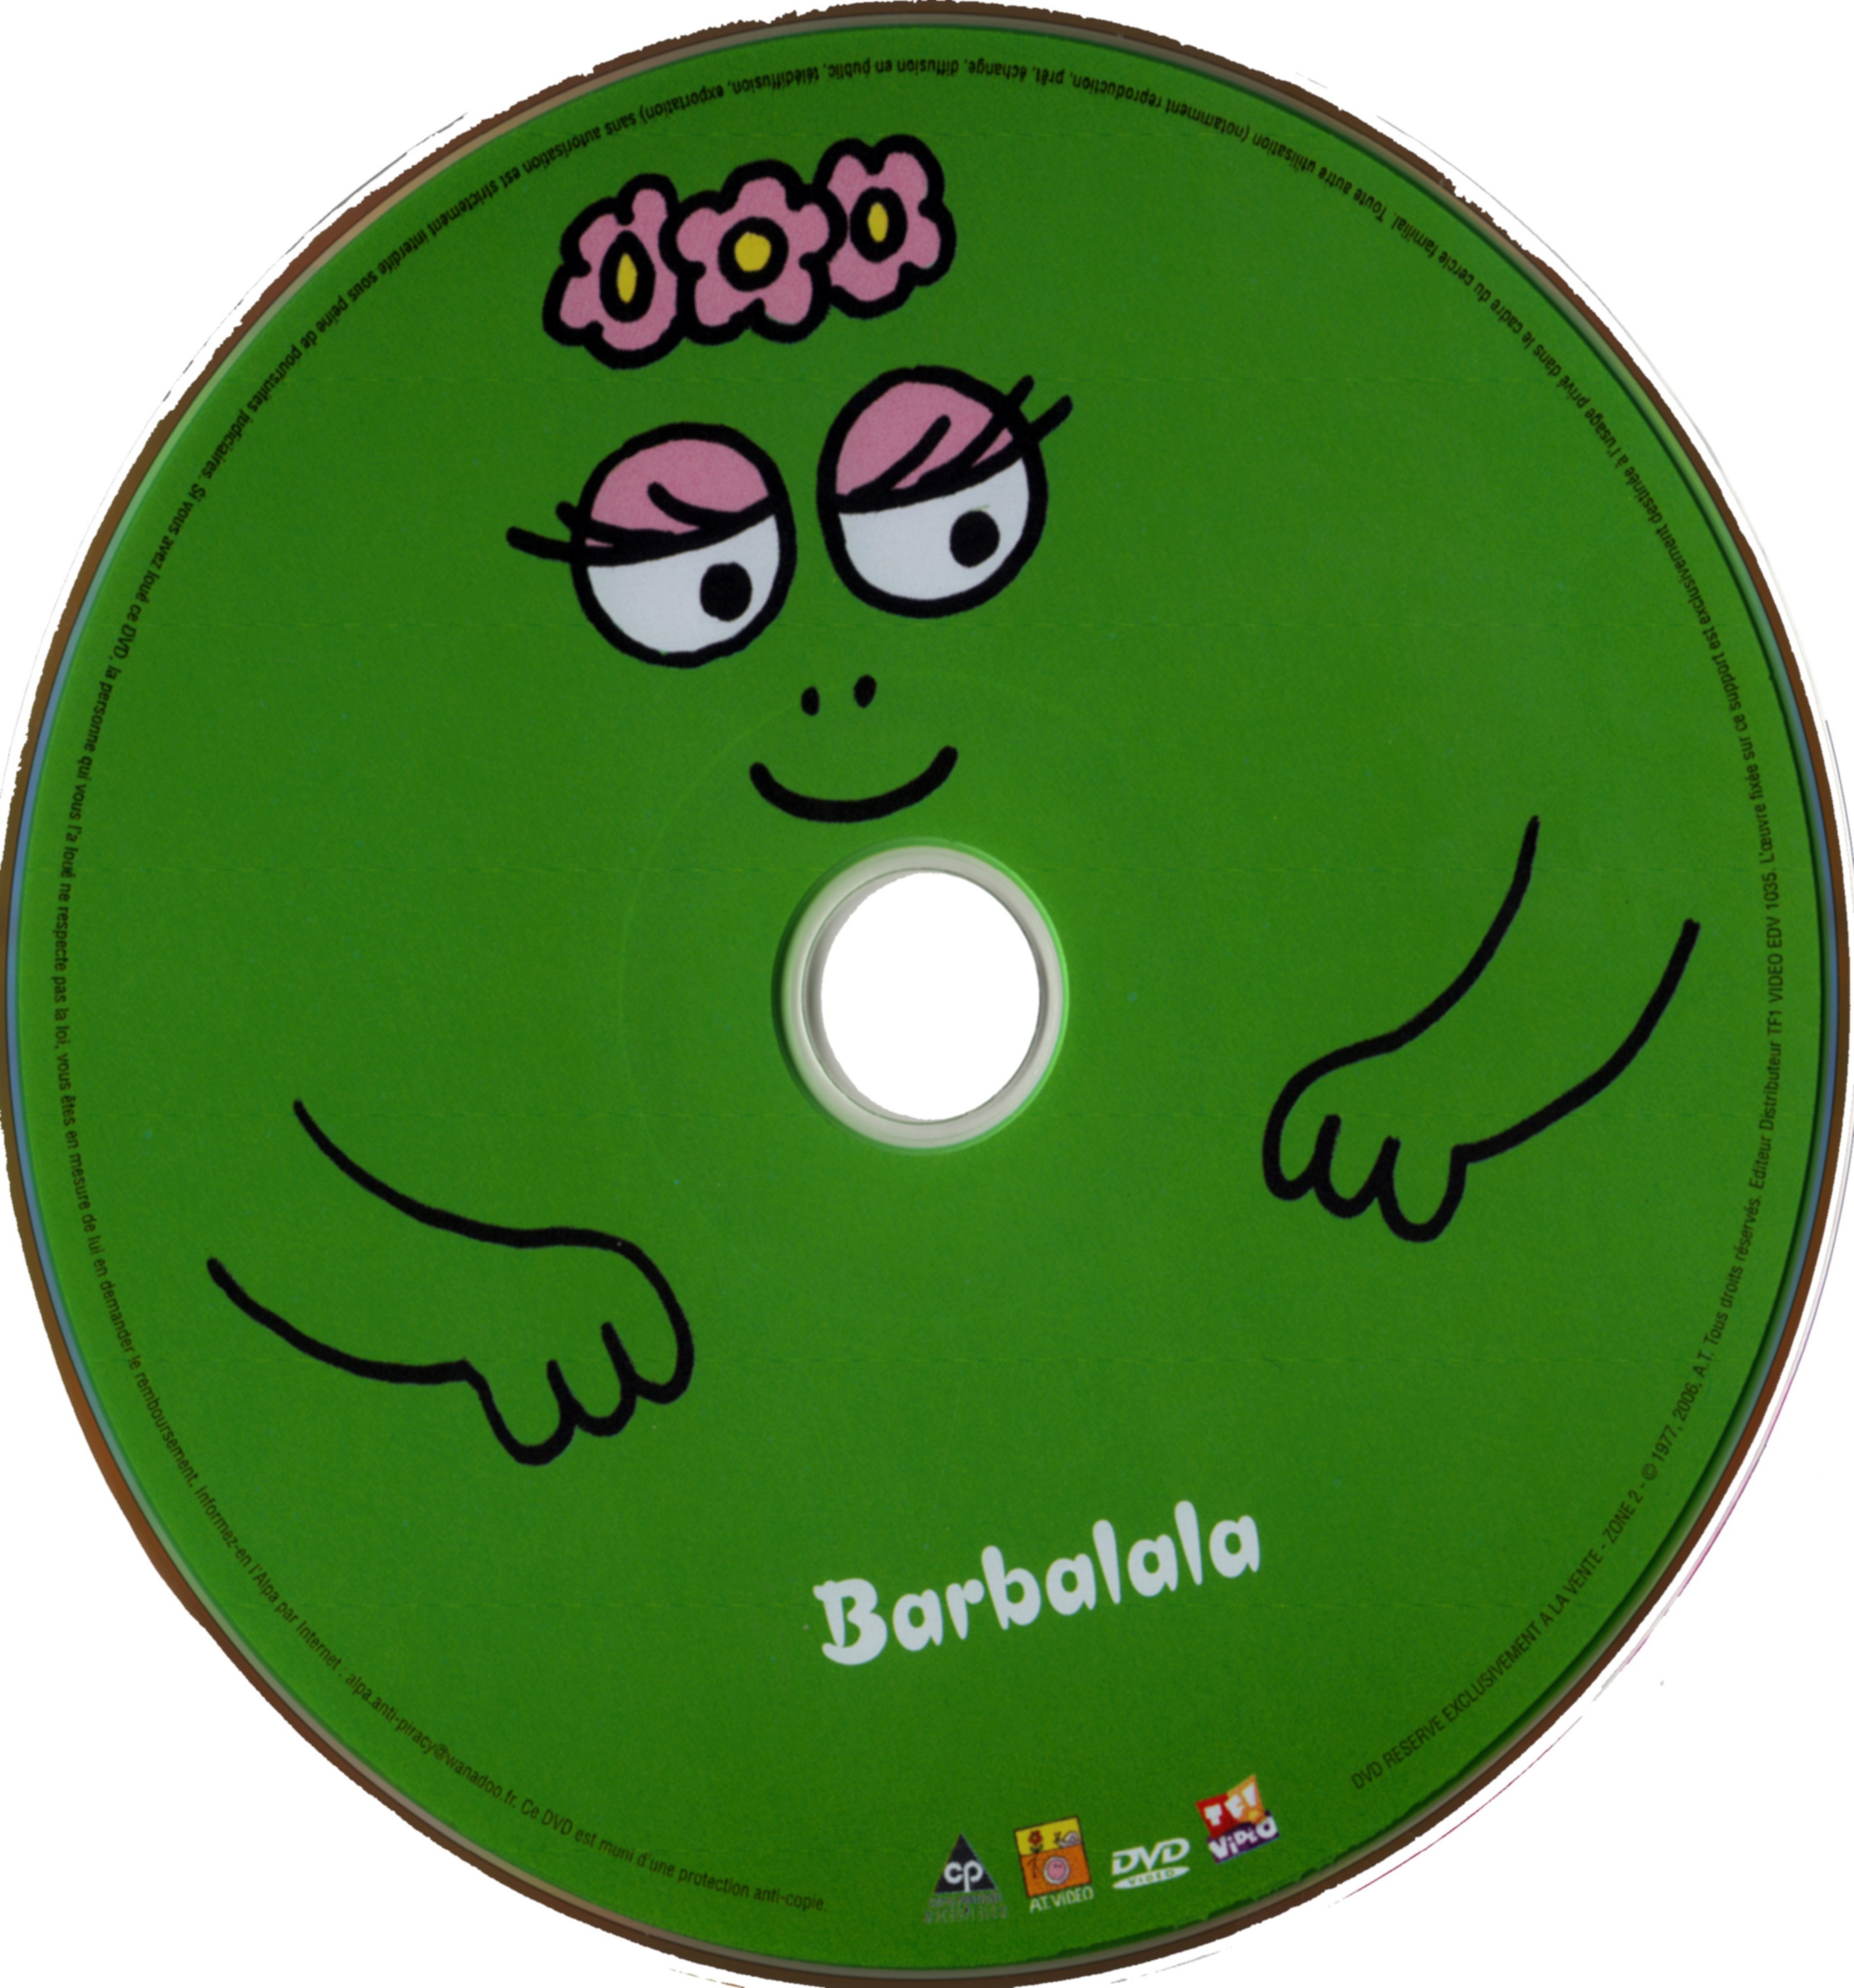 Barbalala